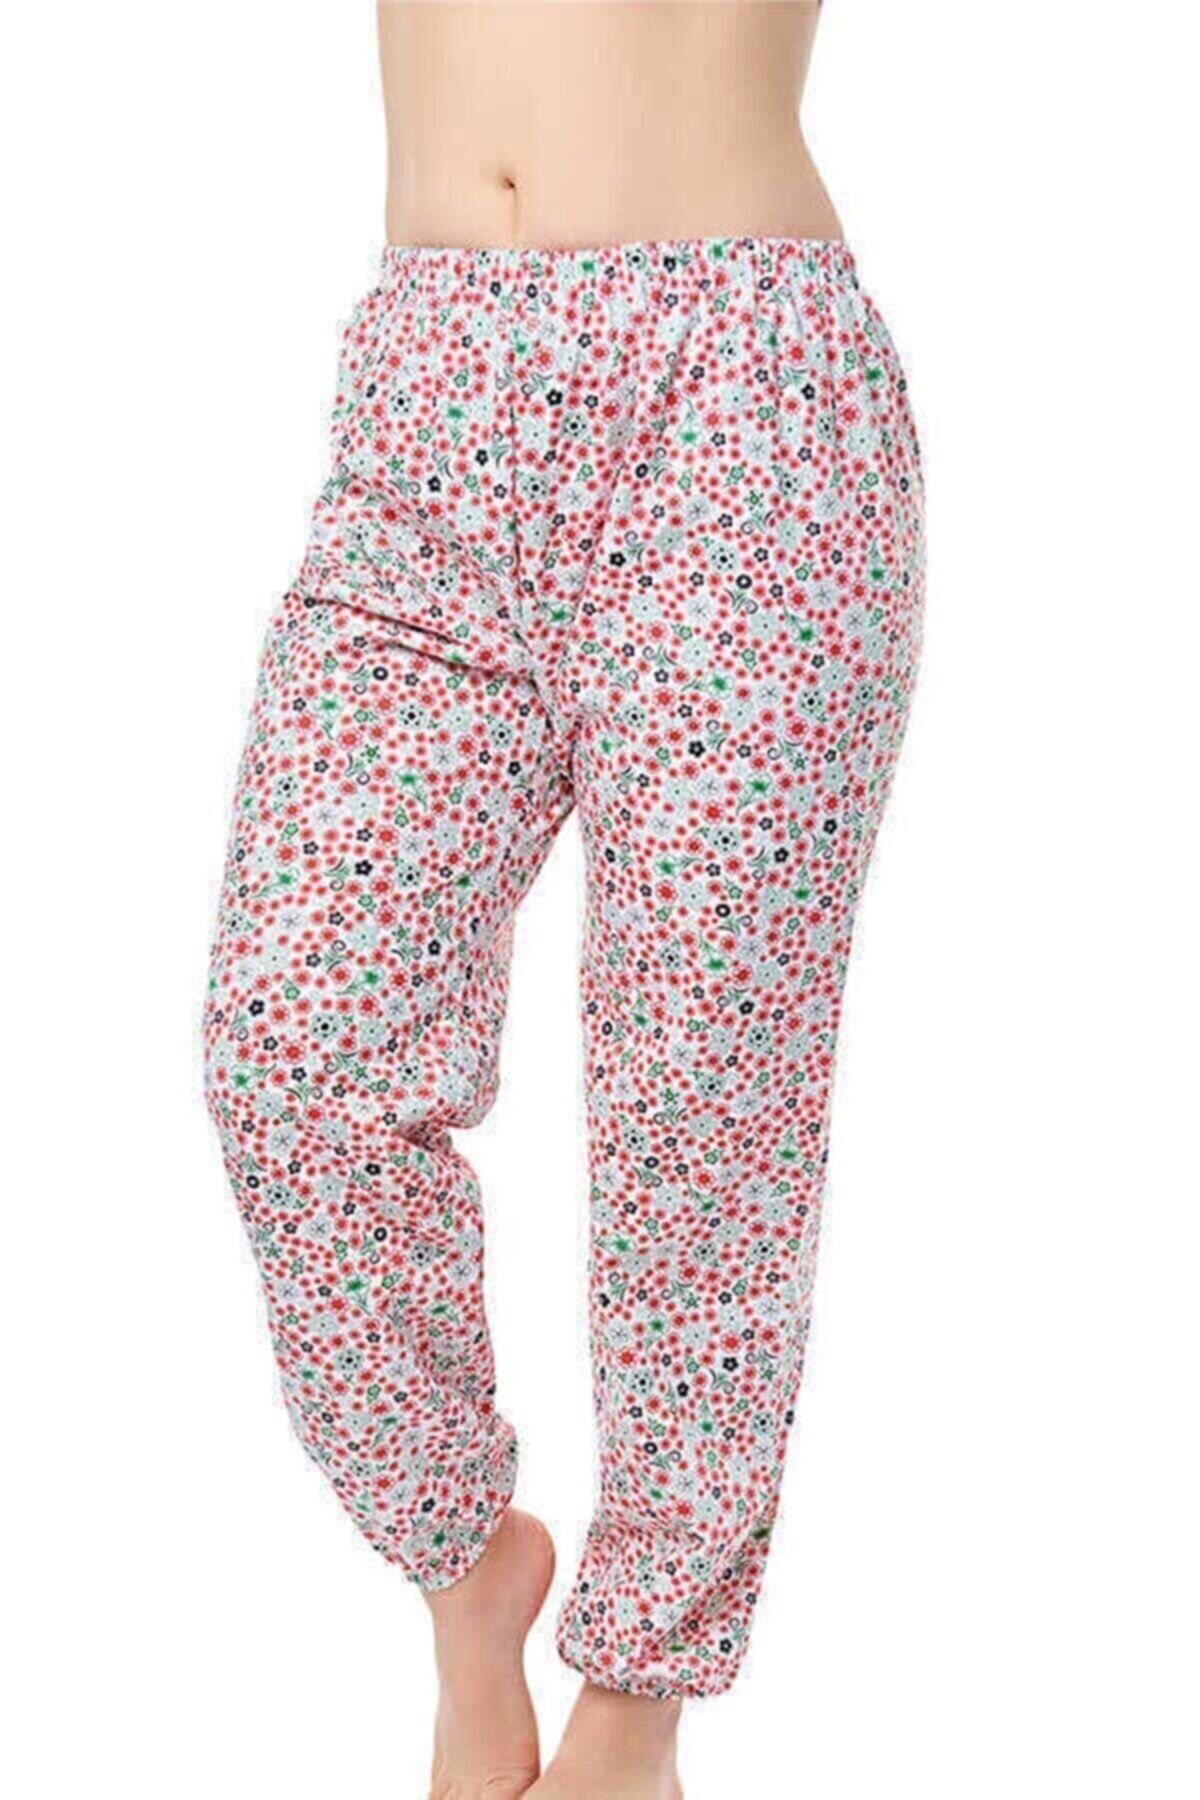 Seher Kadın Uzun Tek Alt Pijama Çiçek Desenli Kışlık Battal Boy 3 Adet